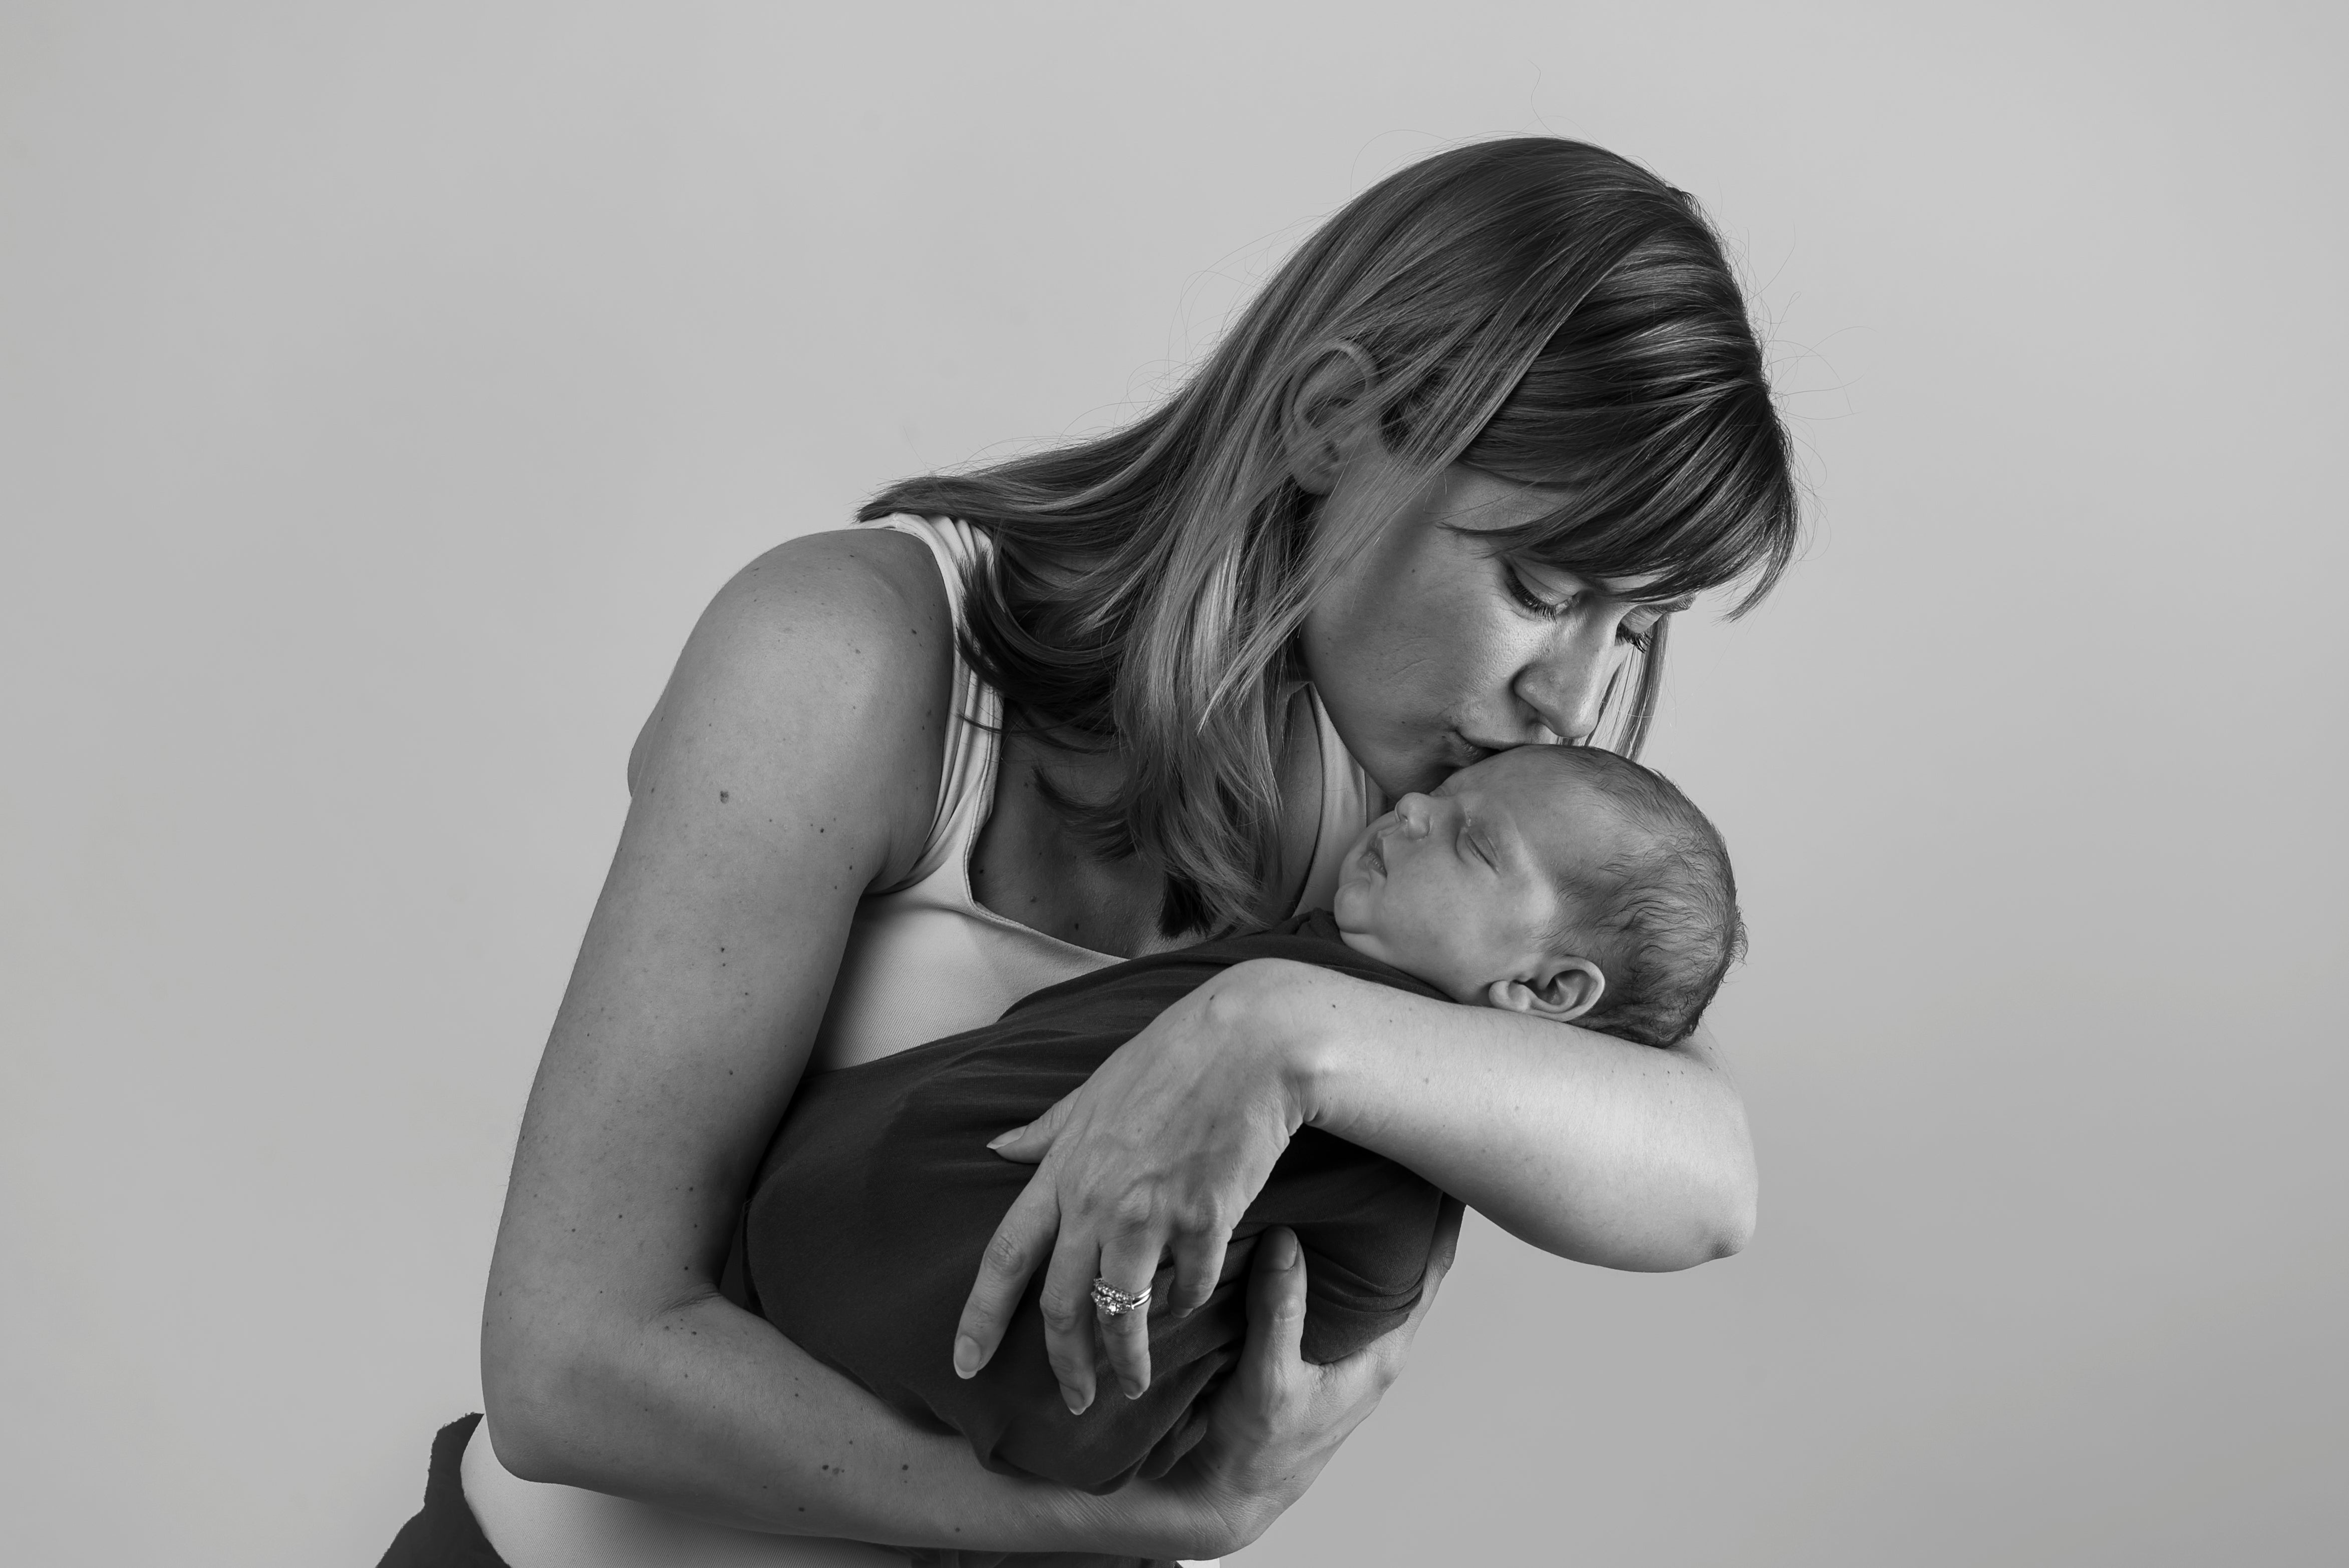 Birth and postpartum journey of Elodie